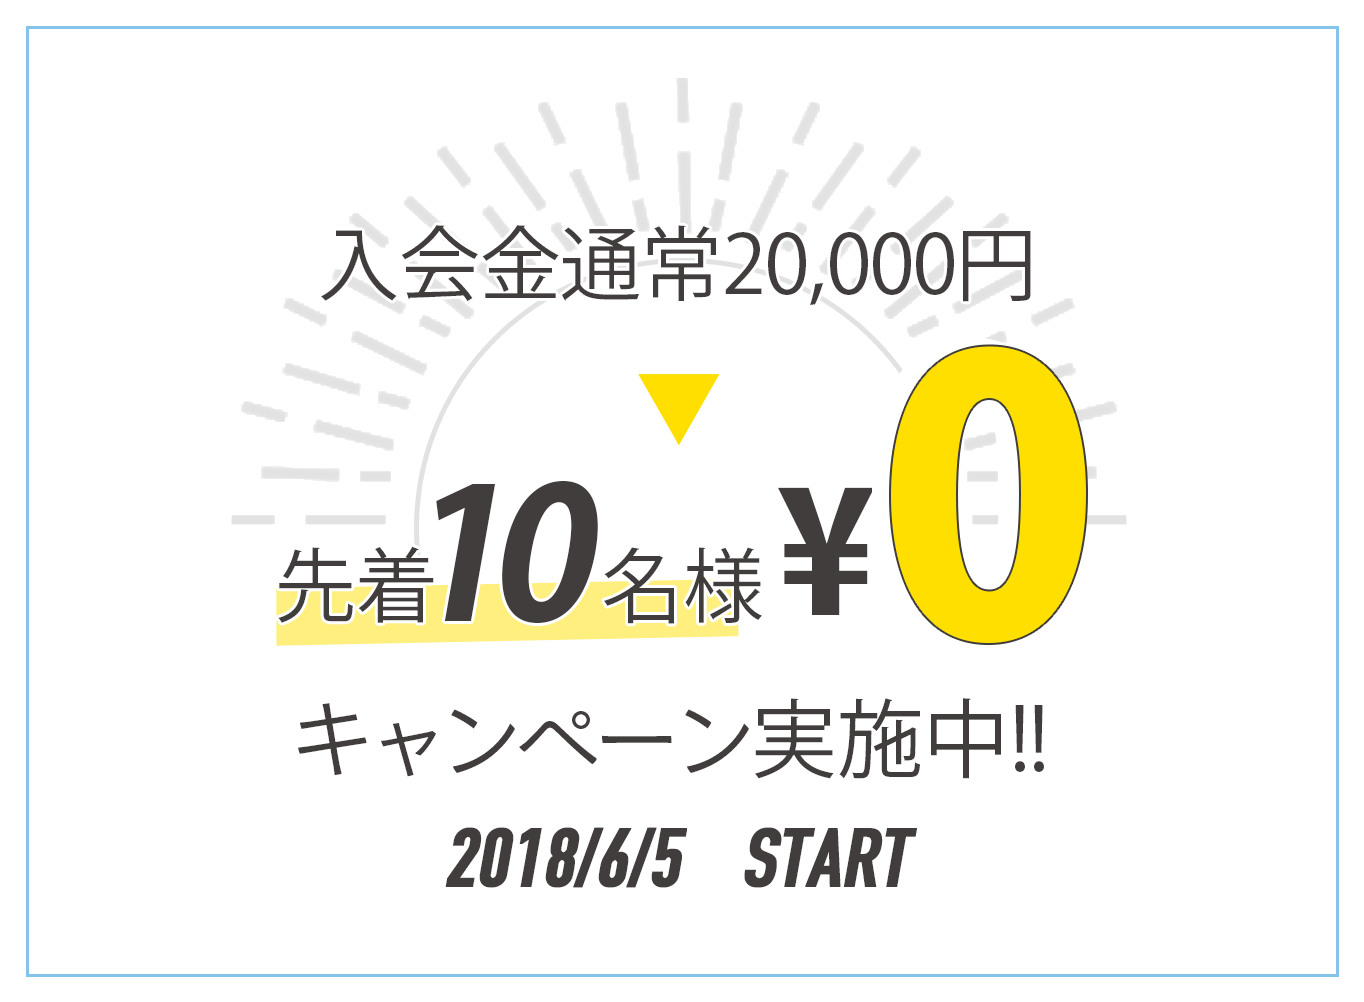 入会金通常20,000円のところ先着10名様限定無料キャンペーン実施中 4/12 START